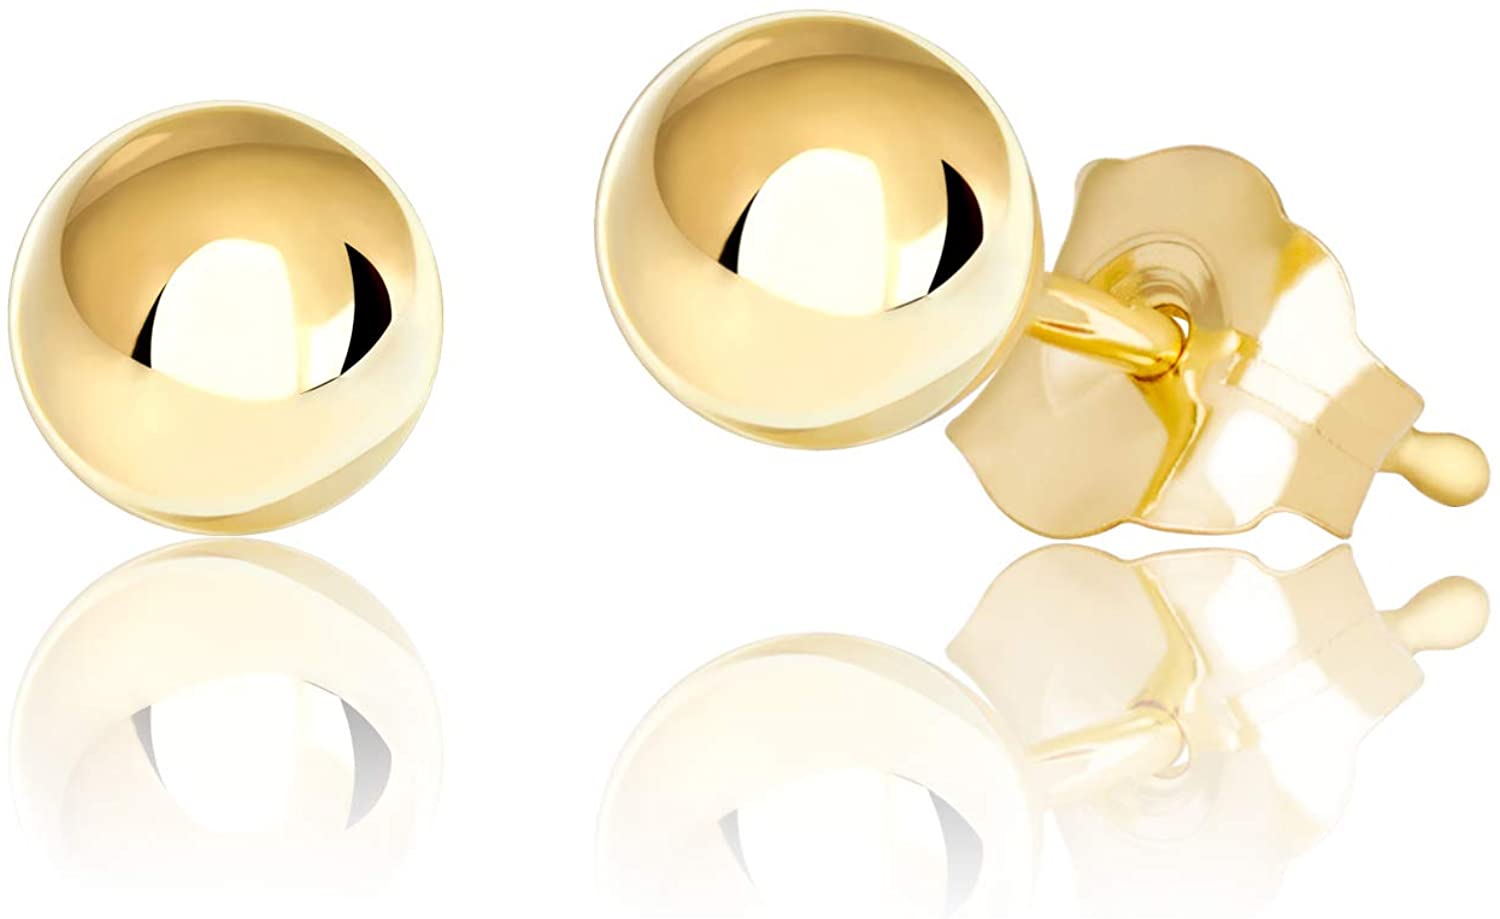 14K Gold Ball Stud Earrings, 2mm - 10mm